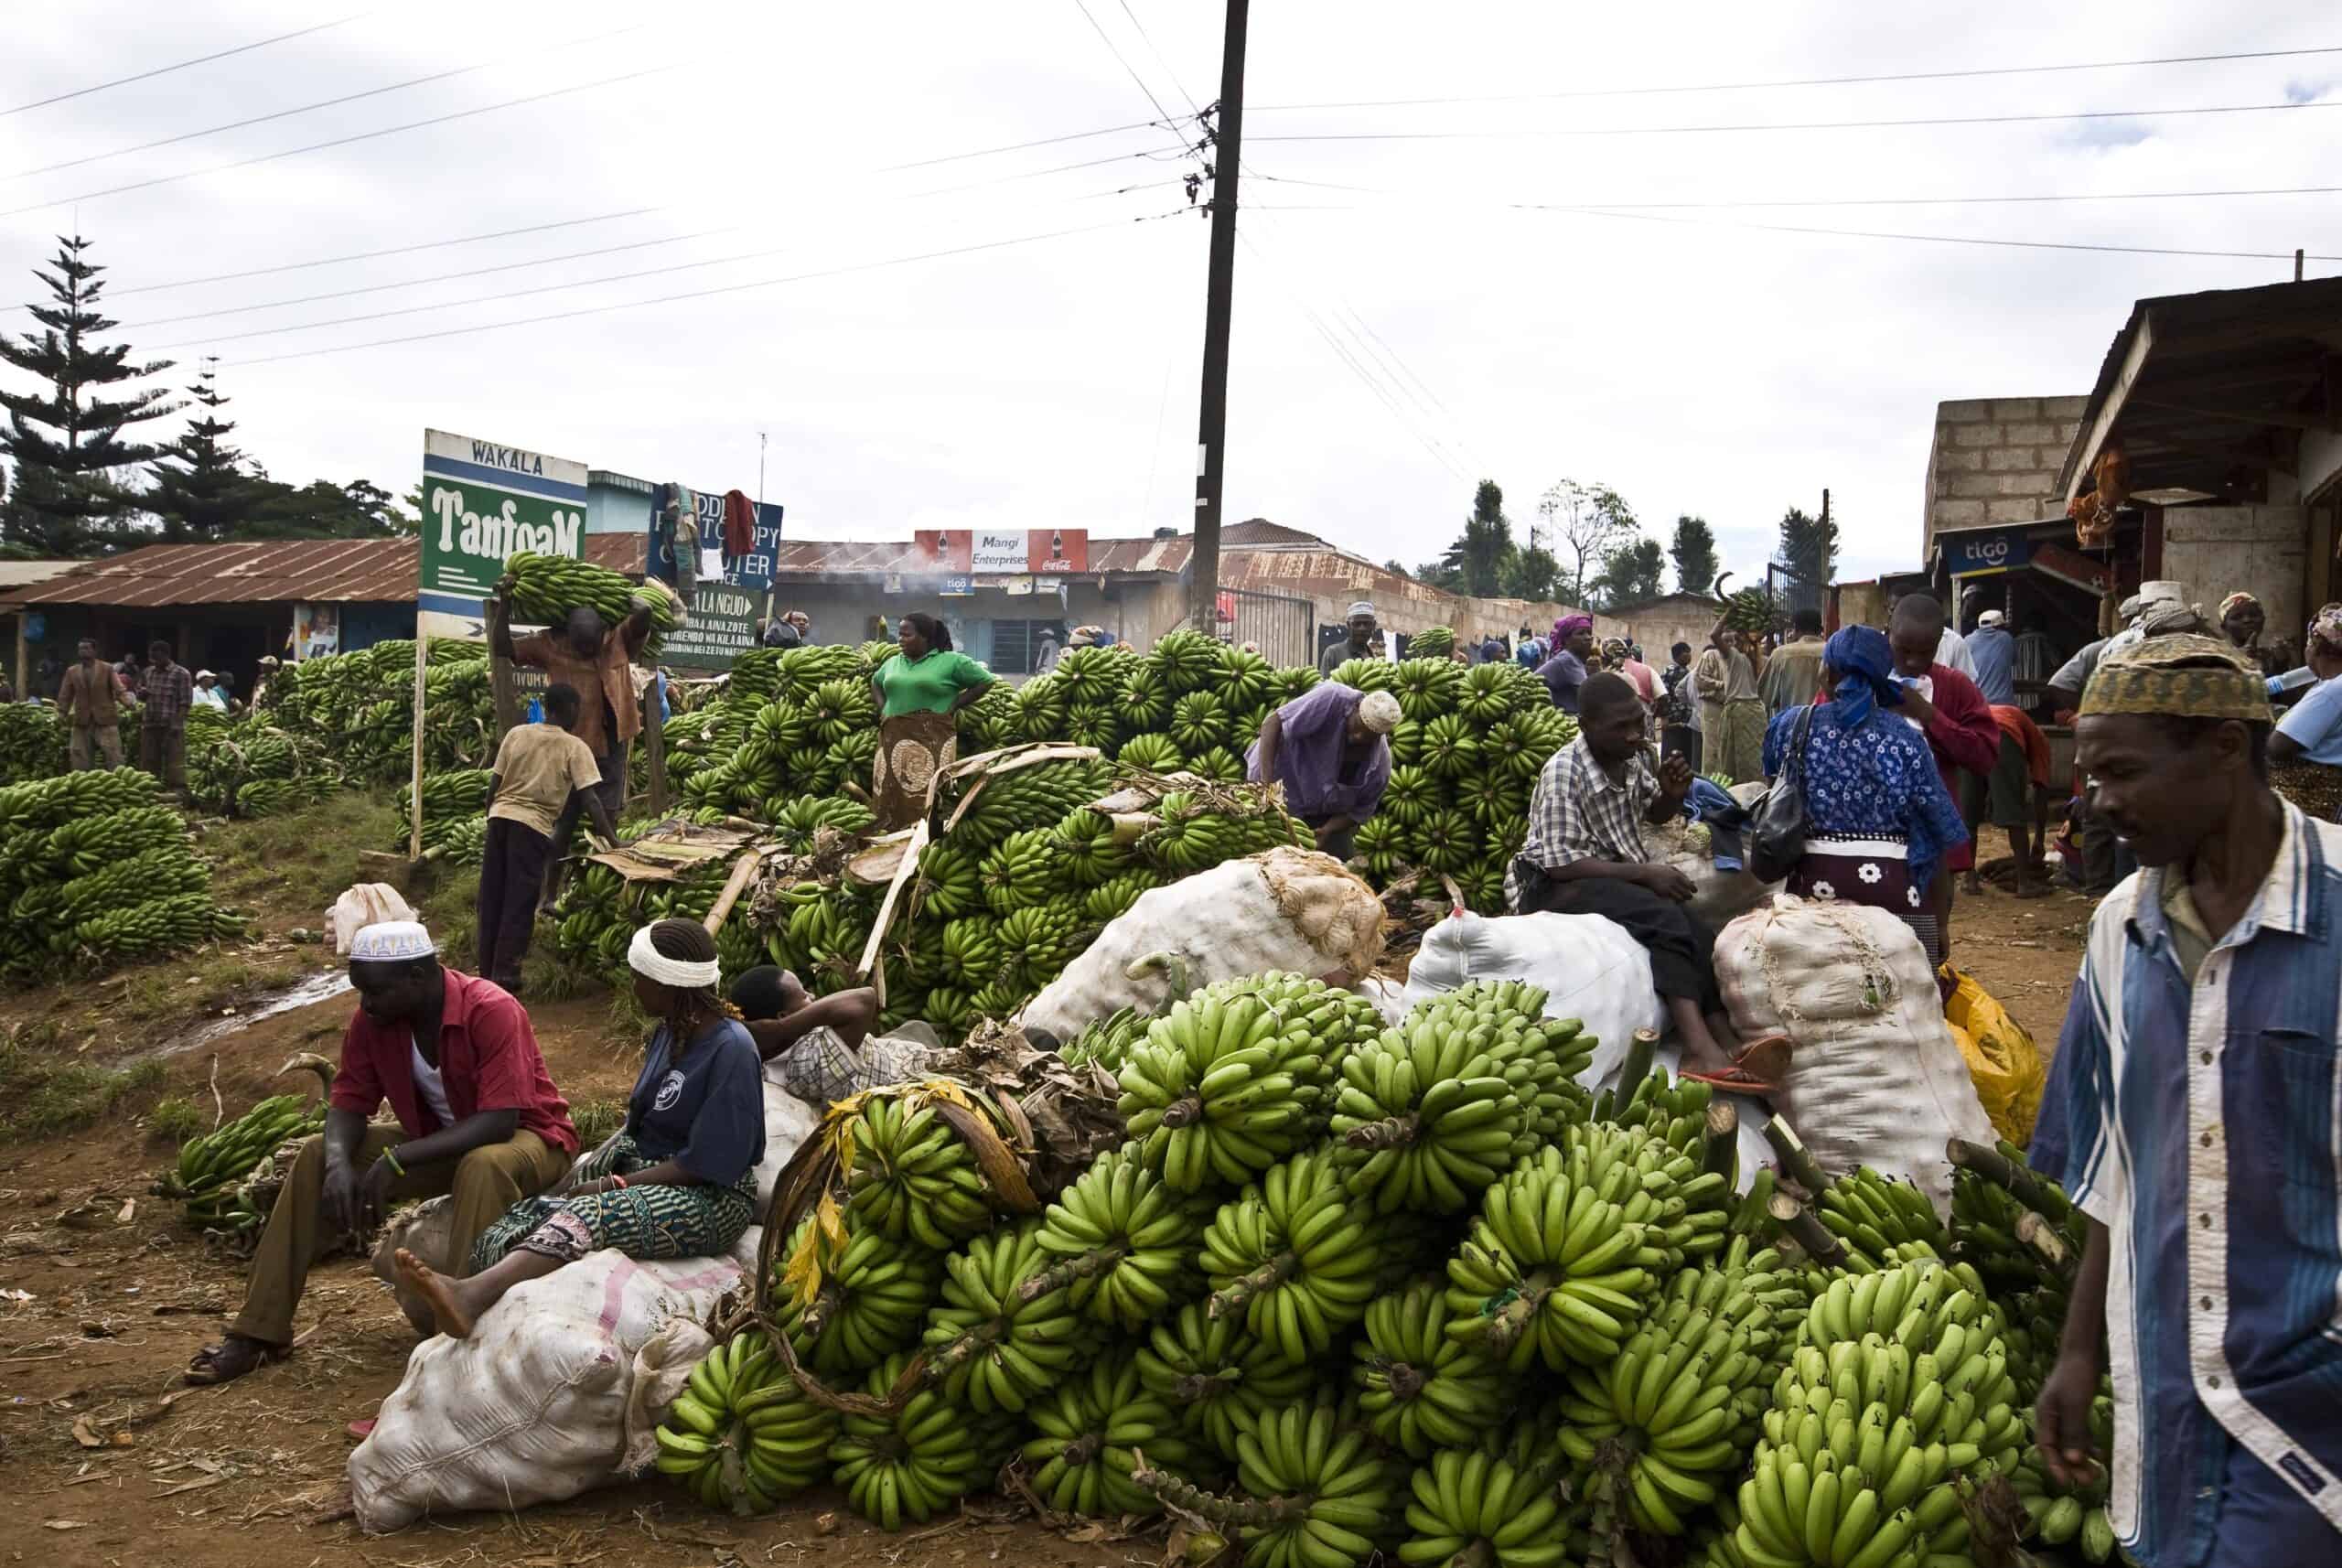 Tanzania Banana market by Runjiv